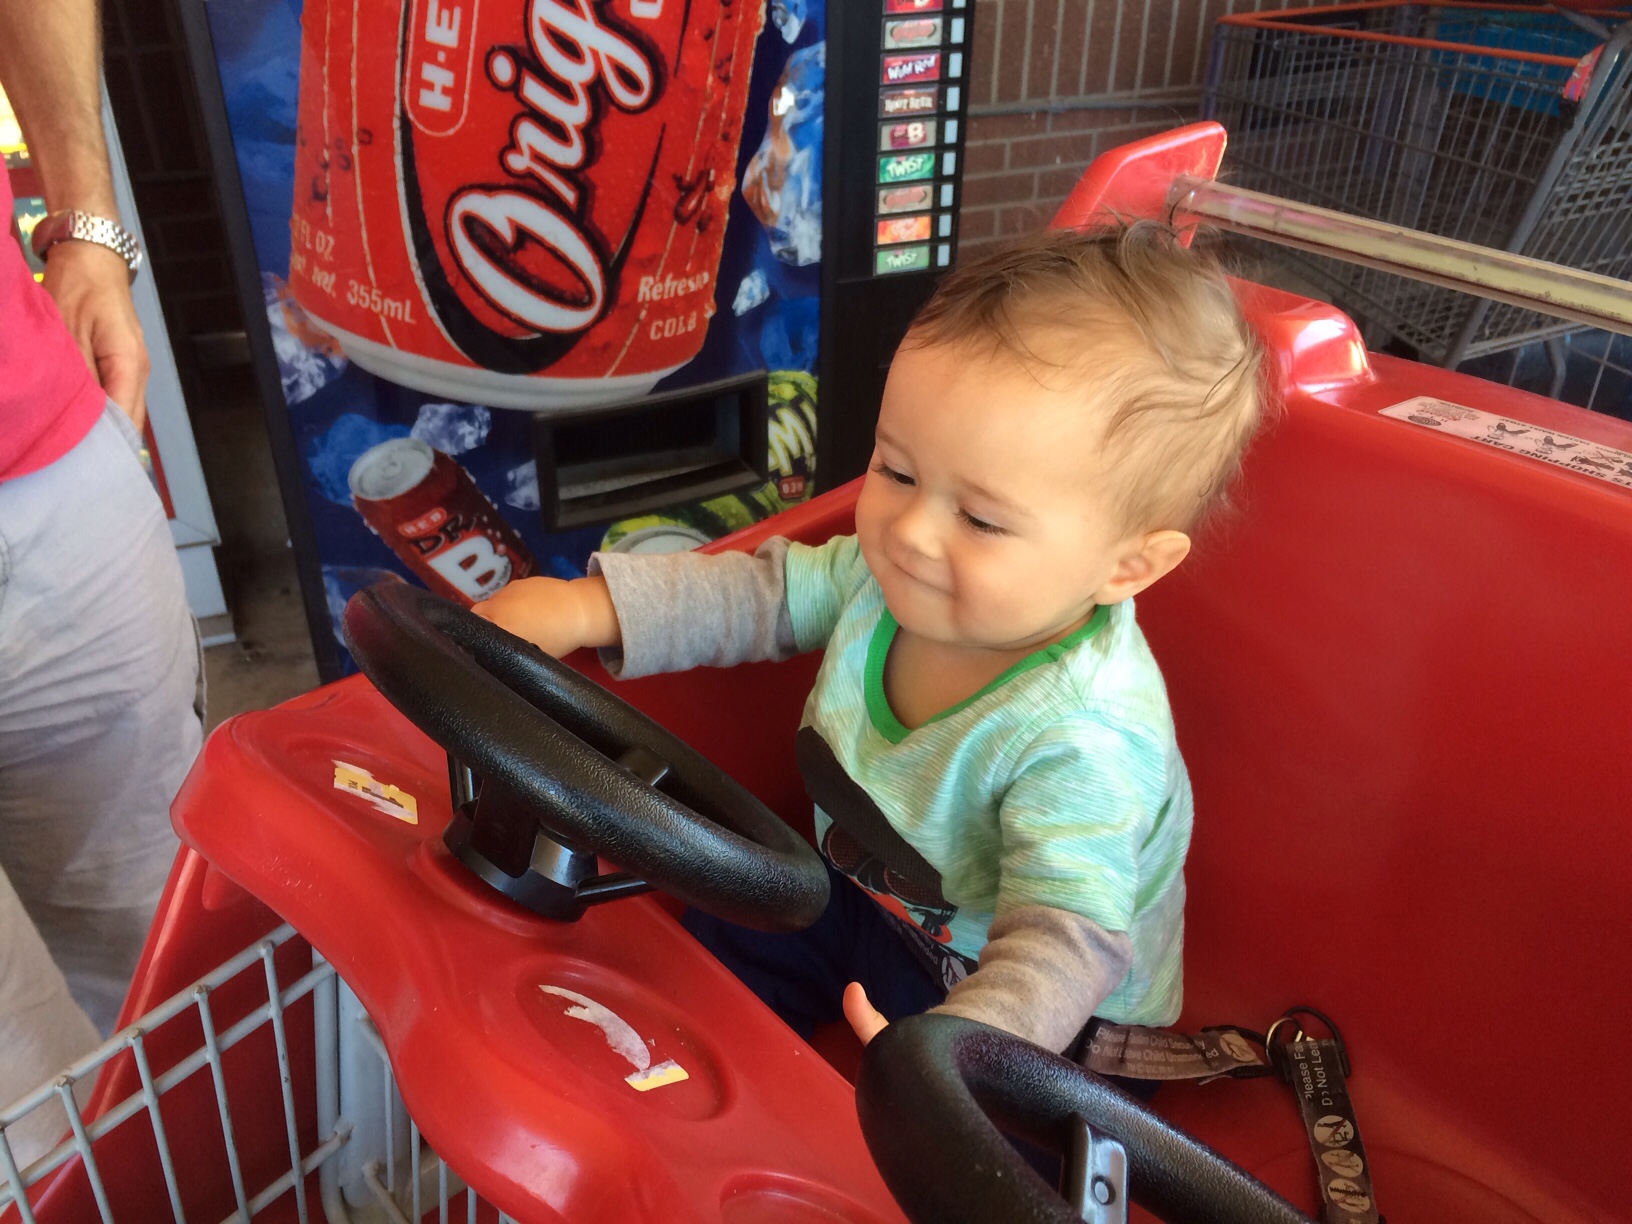 Baby boy o in car shopping cart